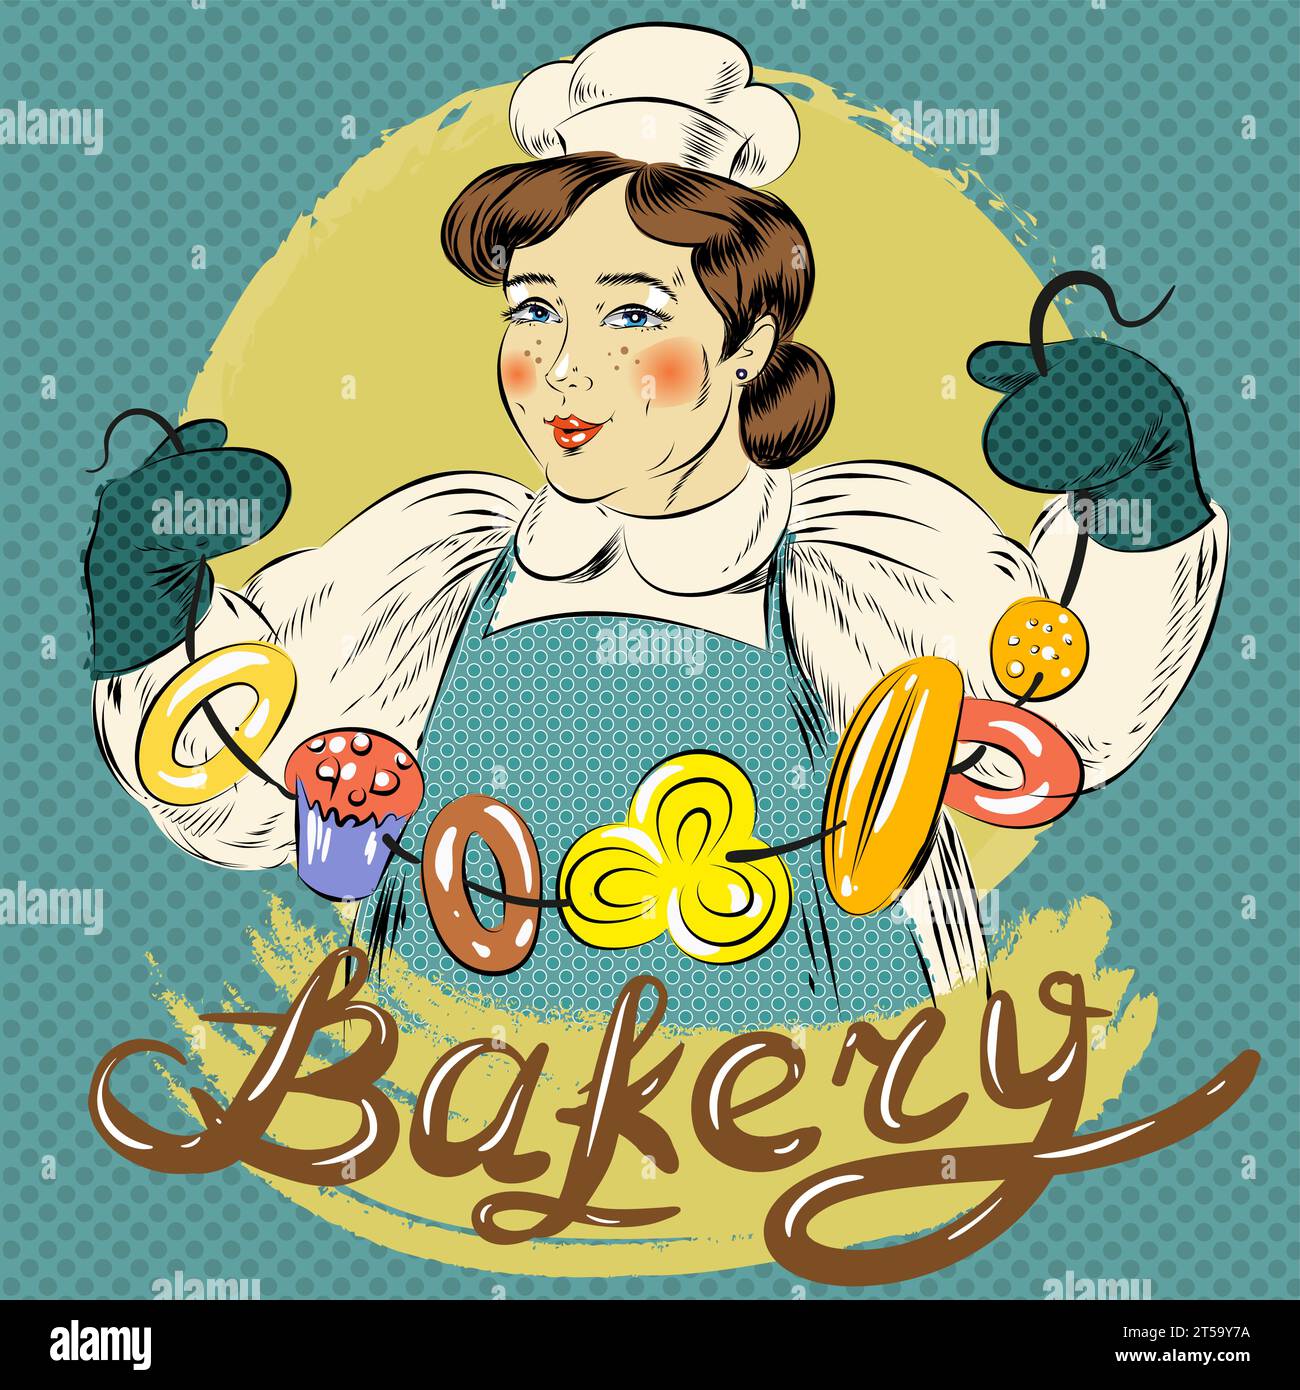 Illustrazione vettoriale di donna con pacchetto di bagel e altri dolci. Bakery Concept, stile comico retrò pop art. Illustrazione Vettoriale